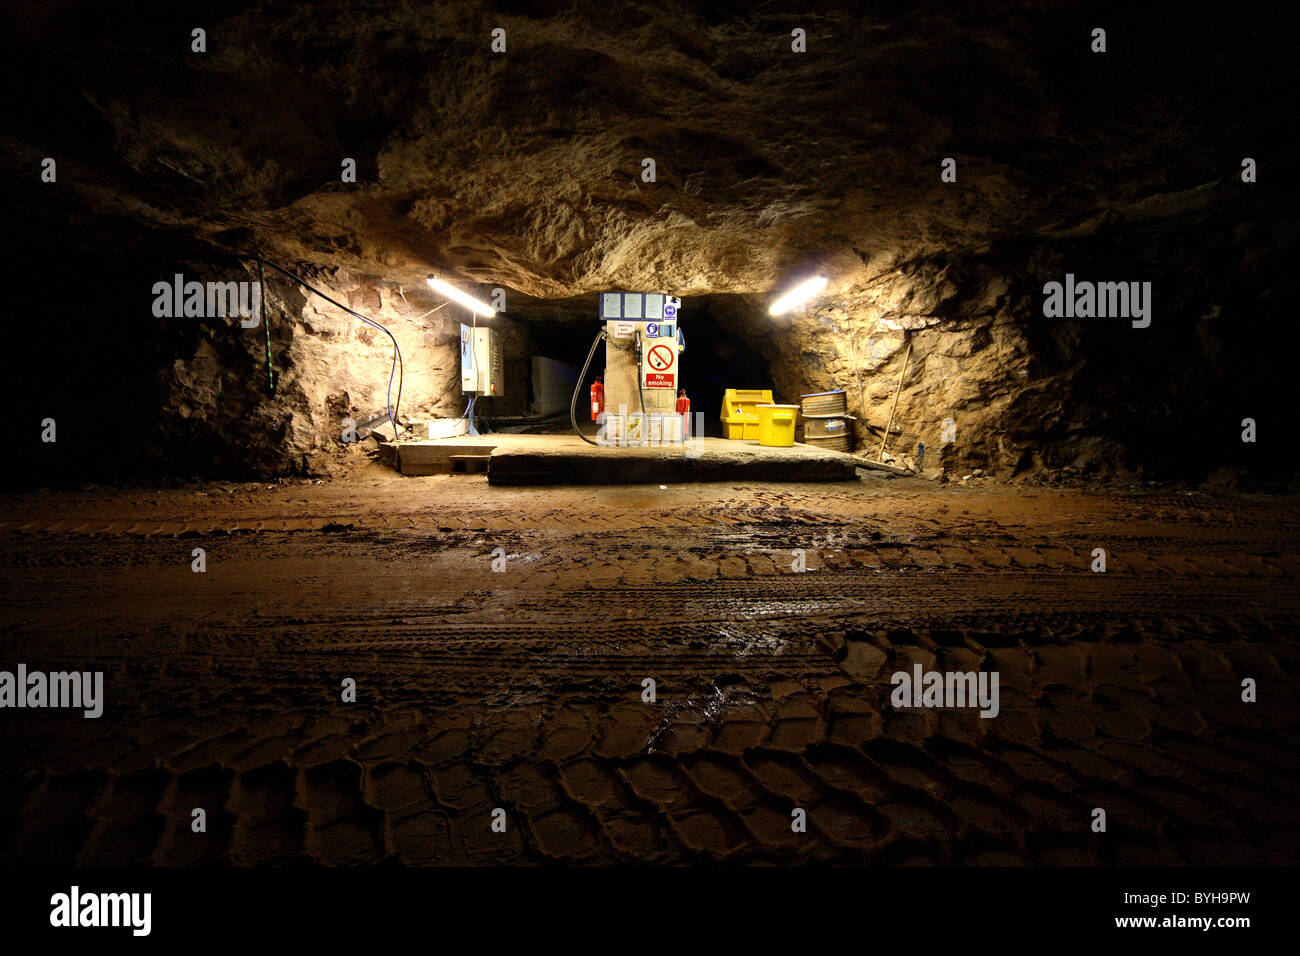 Filling station Inside a Gypsum mine Stock Photo